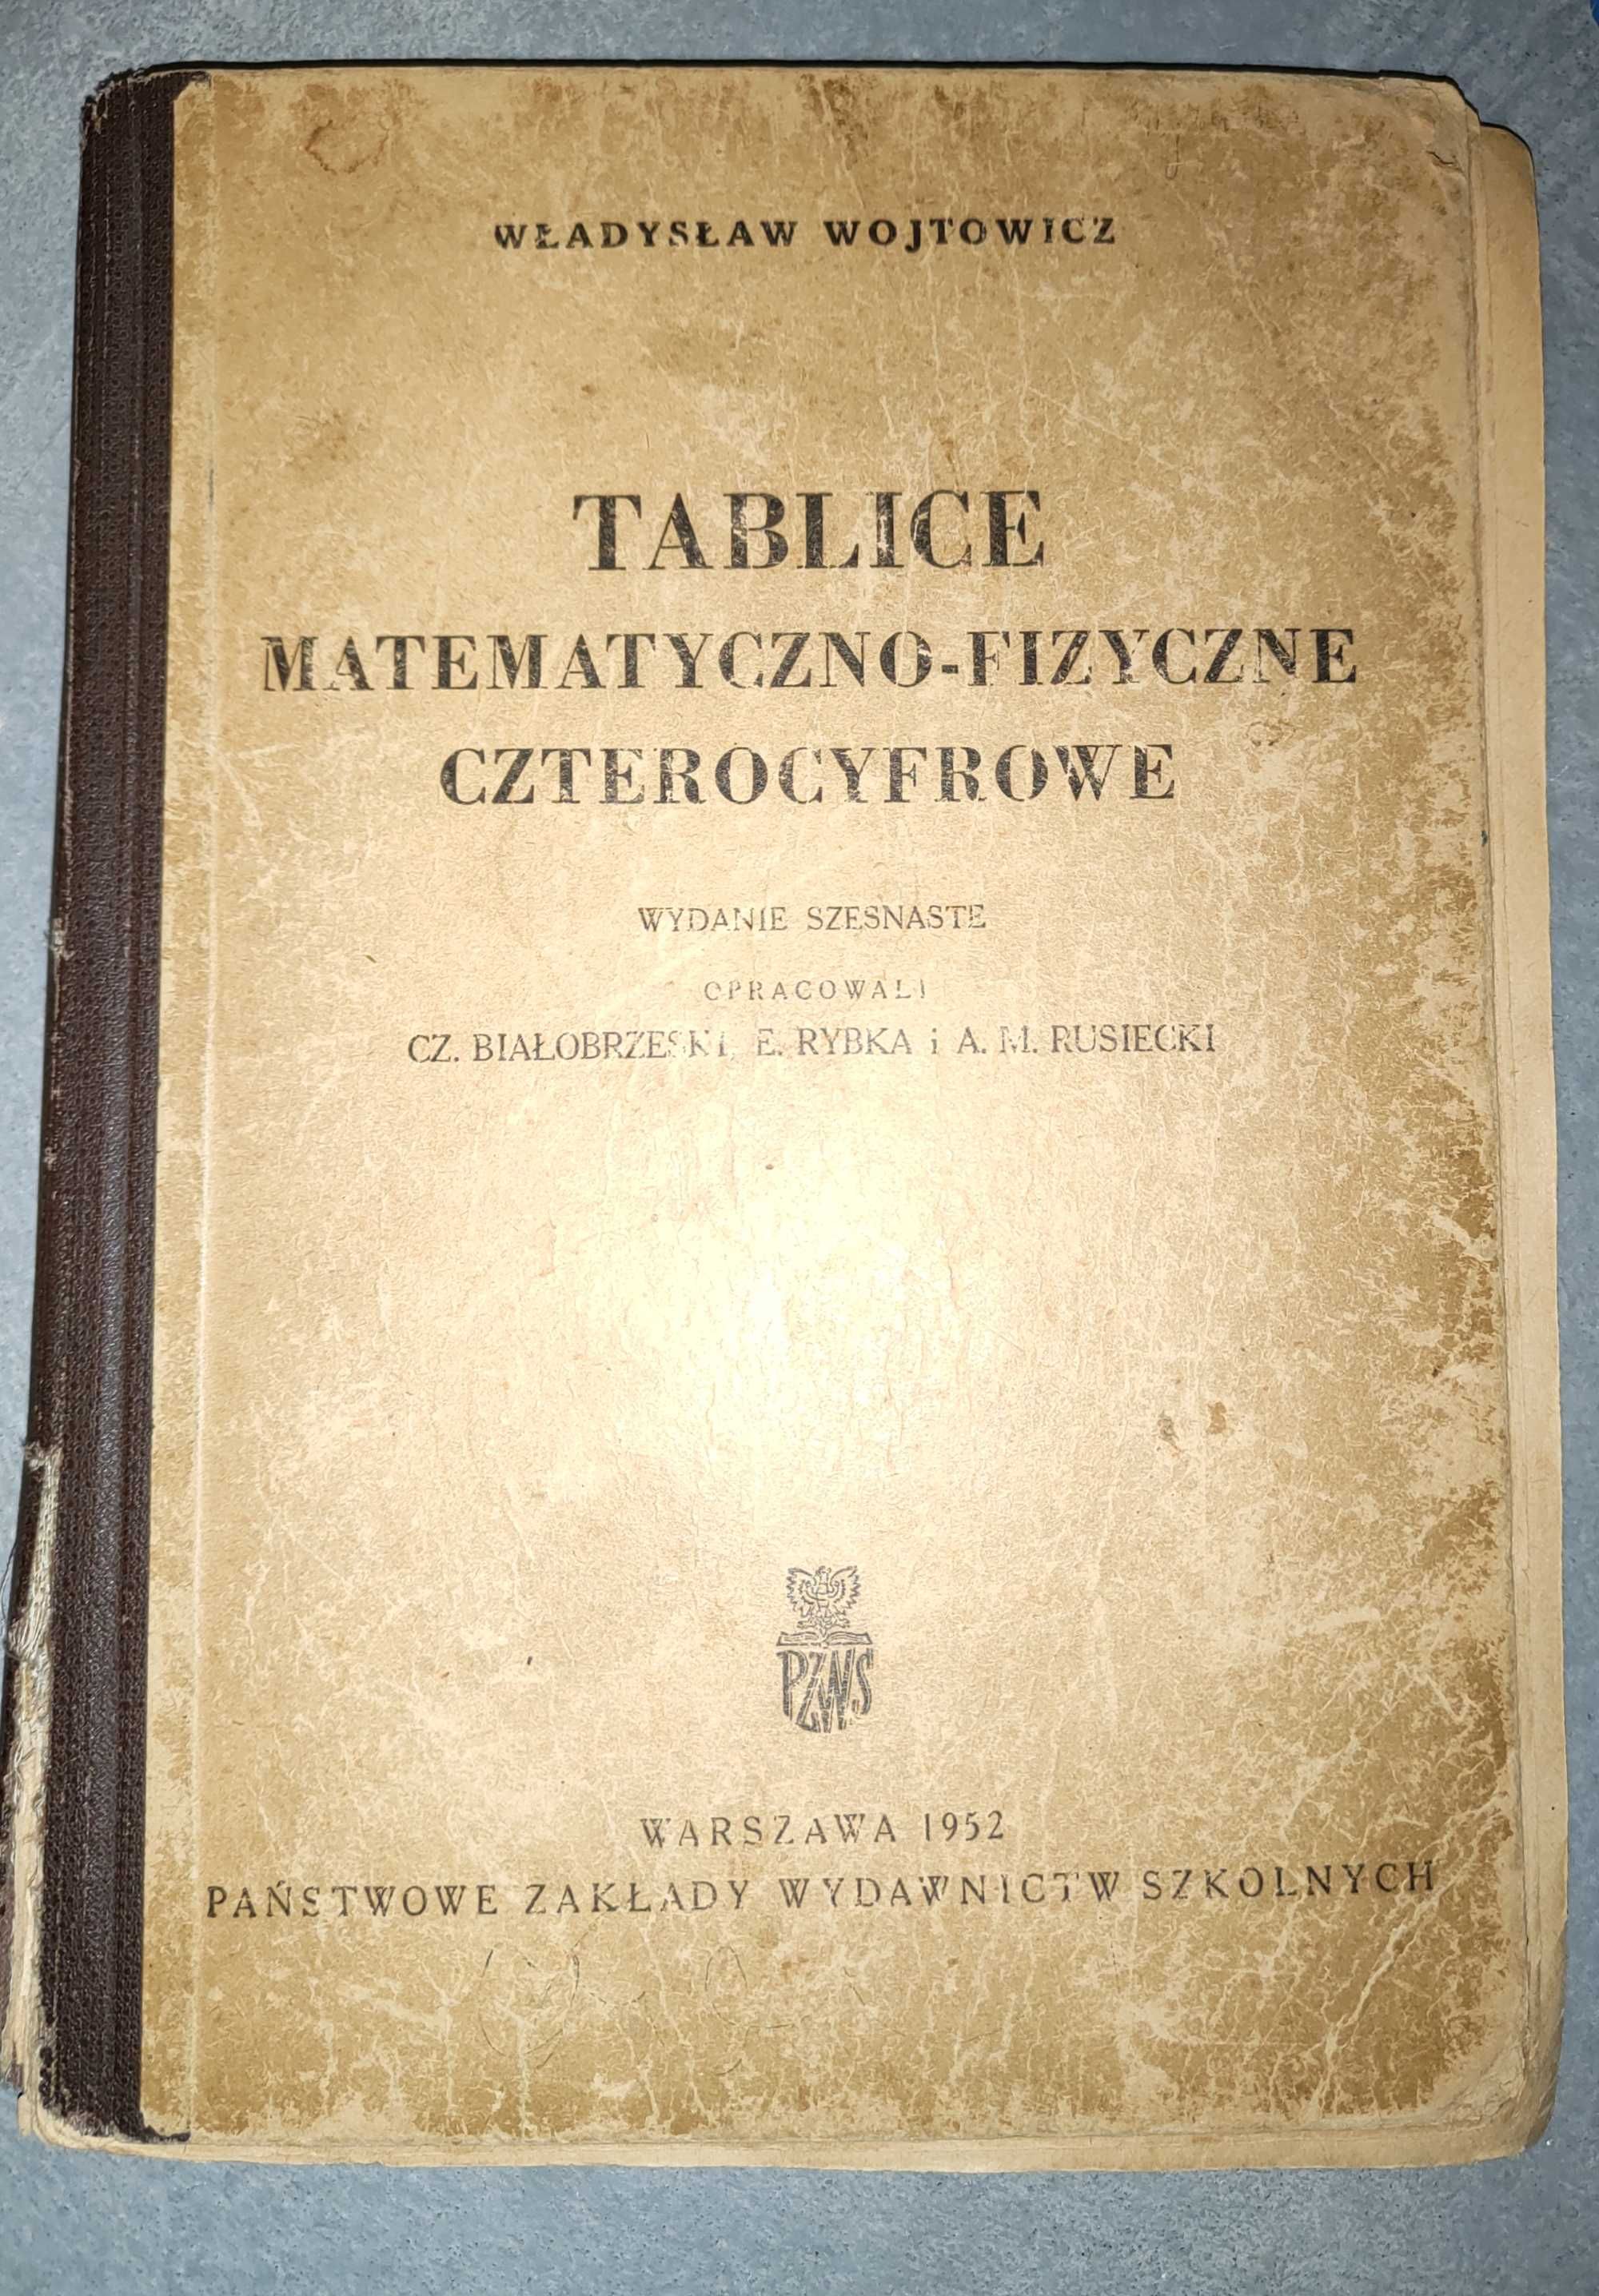 Tablice matematyczno-fizyczne czterocyfrowe Władysław Wojtowicz